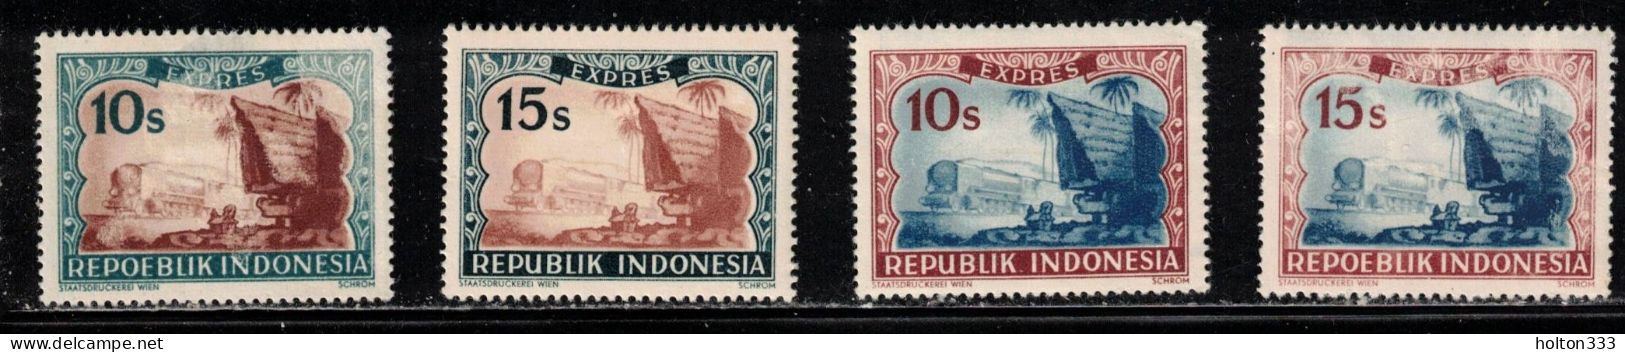 INDONESIA Scott # E1, E1A, E1B, E1C MH - Special Delivery Stamps - Indonésie